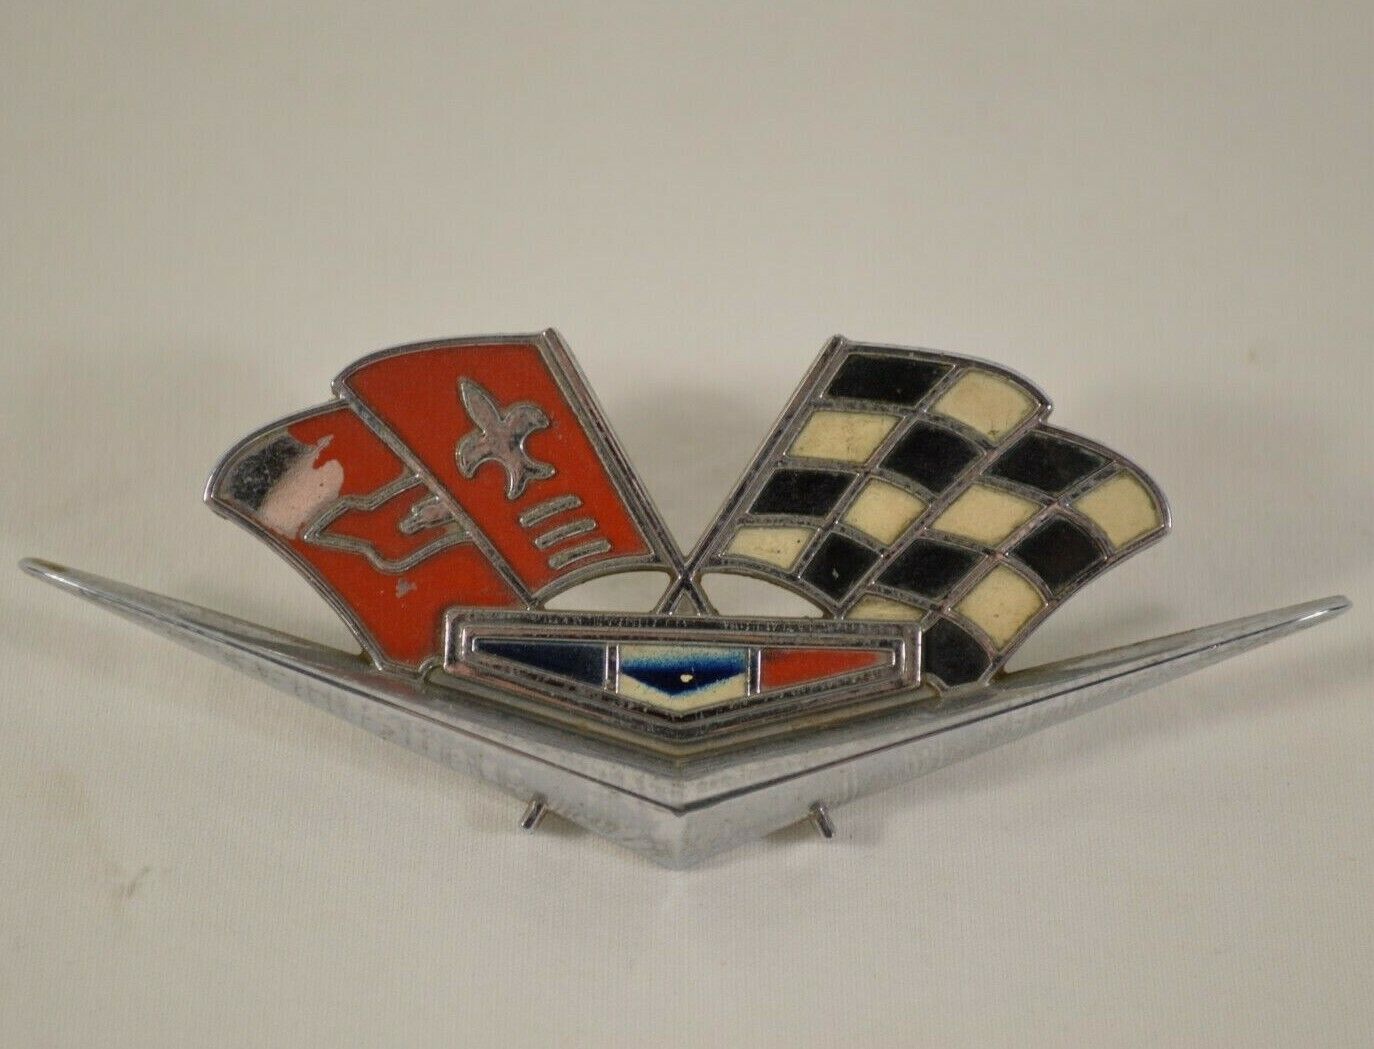 Vtg 1964-1966 Corvette Side Badge Emblem OEM GM Factory Original Part